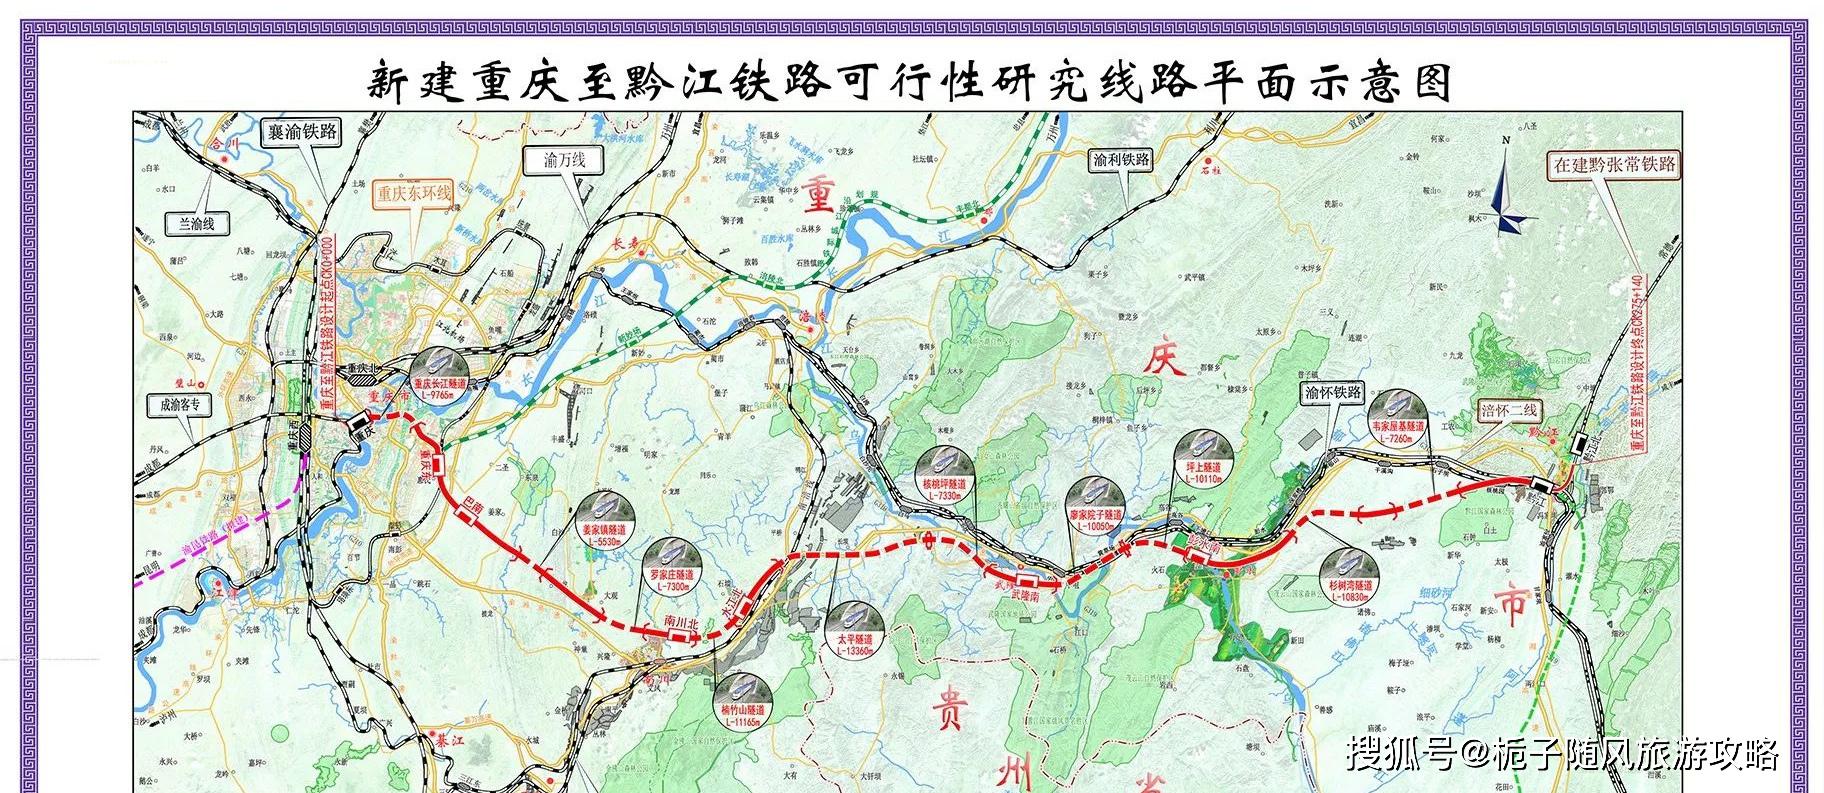 厦渝客运通道的重要组成部分渝湘高速铁路